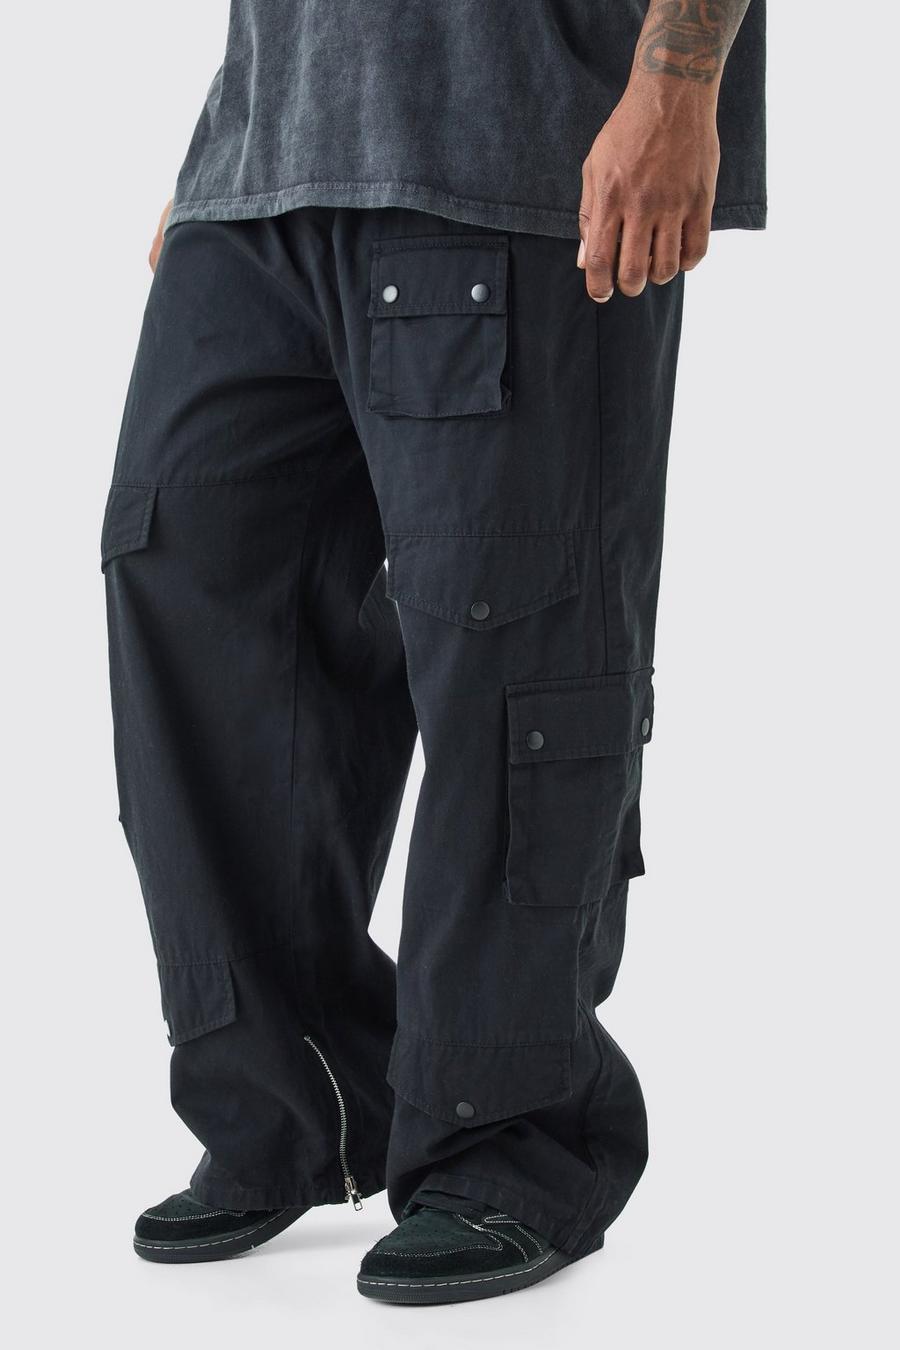 Pantaloni Cargo Plus Size rilassati con vita elasticizzata, Black